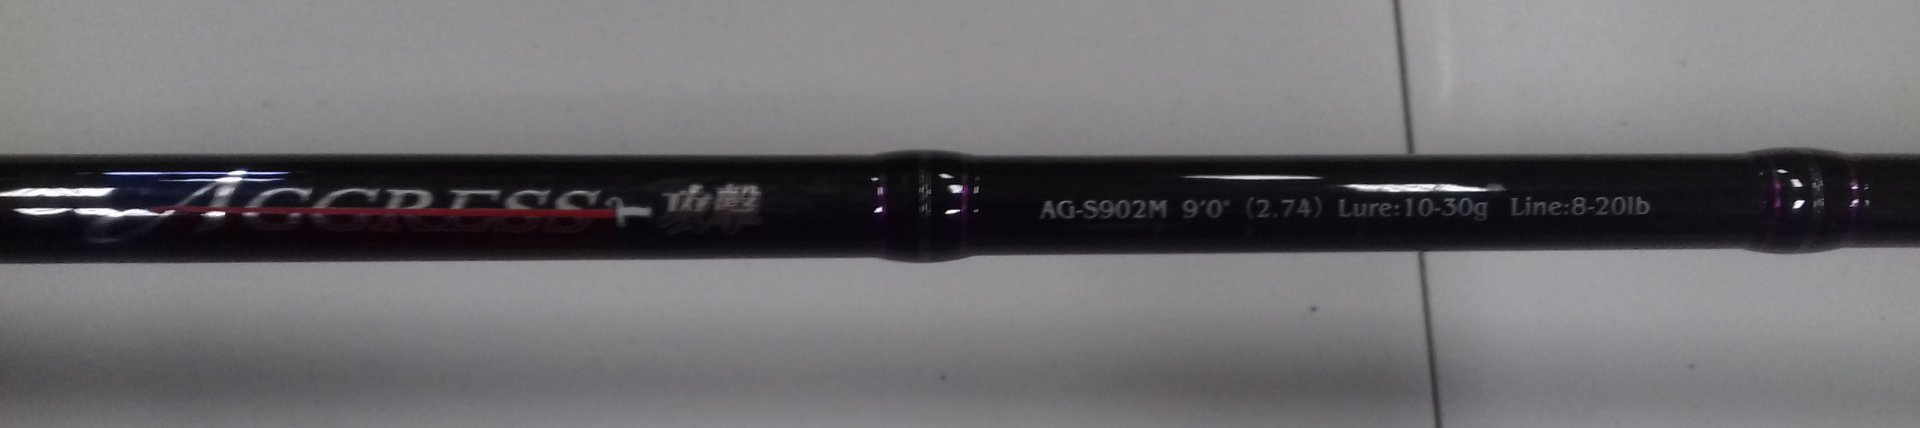 AG-S 902M 2.jpg